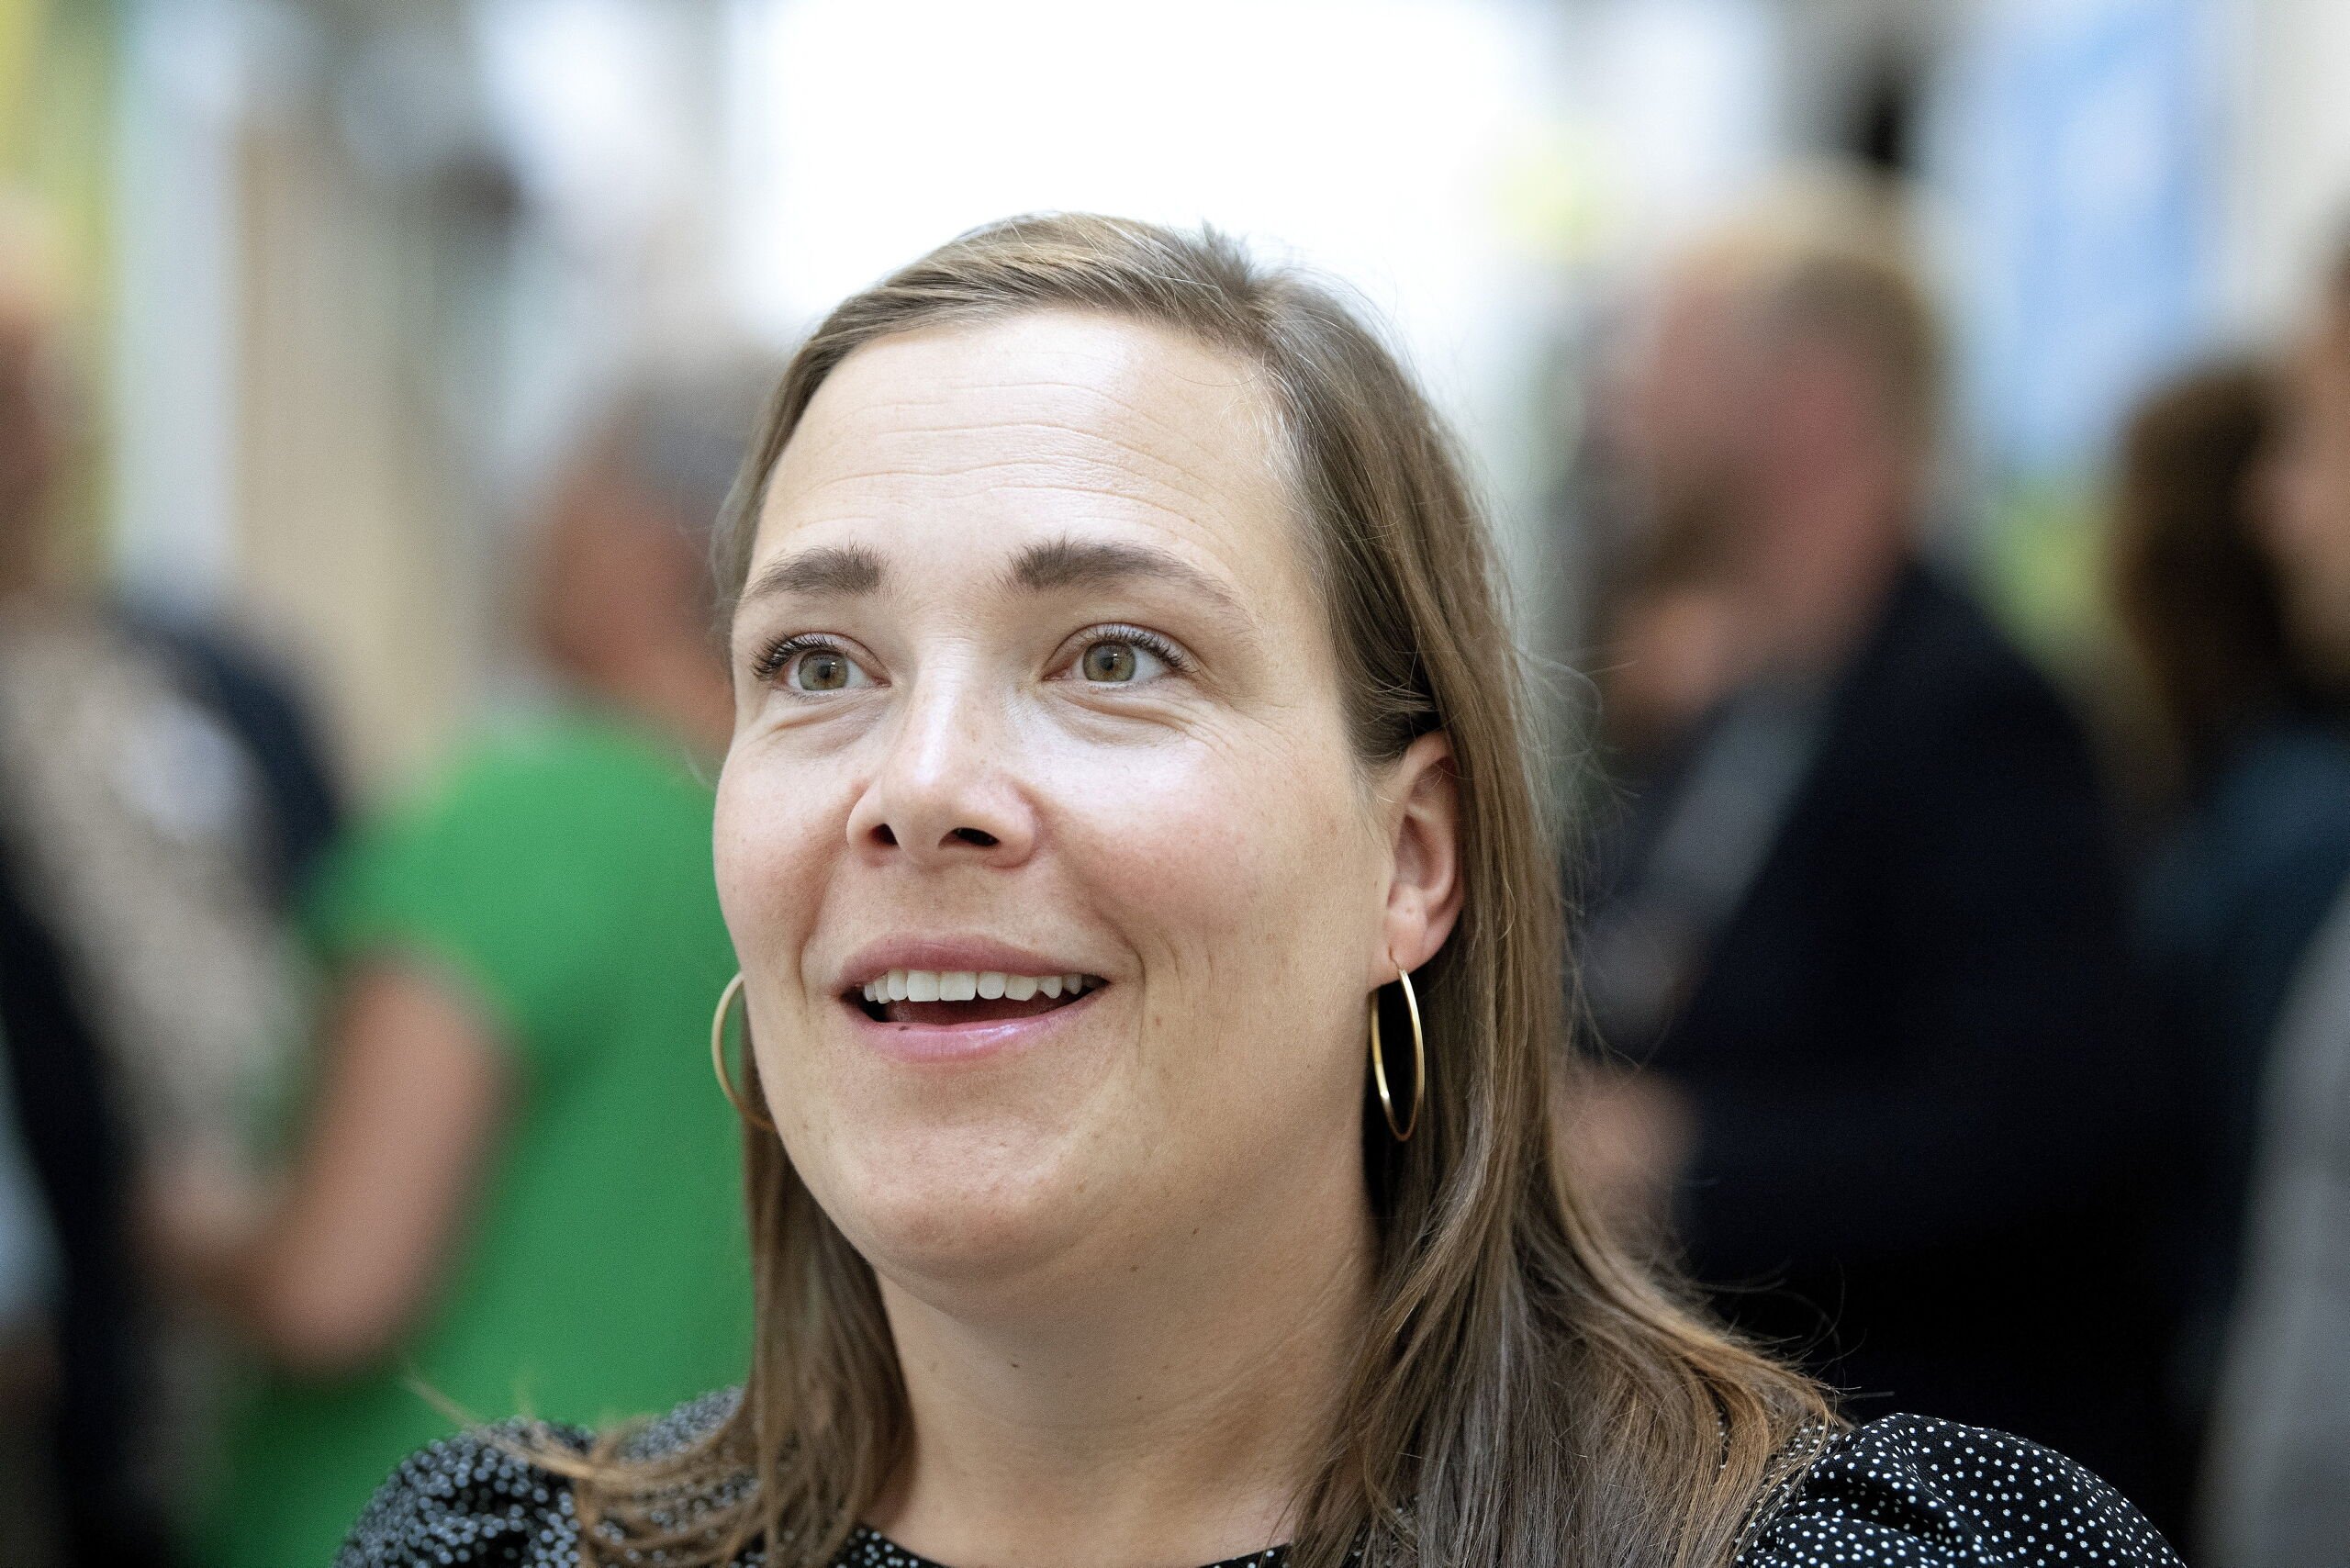 Efter besøg på plejecenter i Brønderslev: Minister fejede spørgsmål om Margrethelund af banen